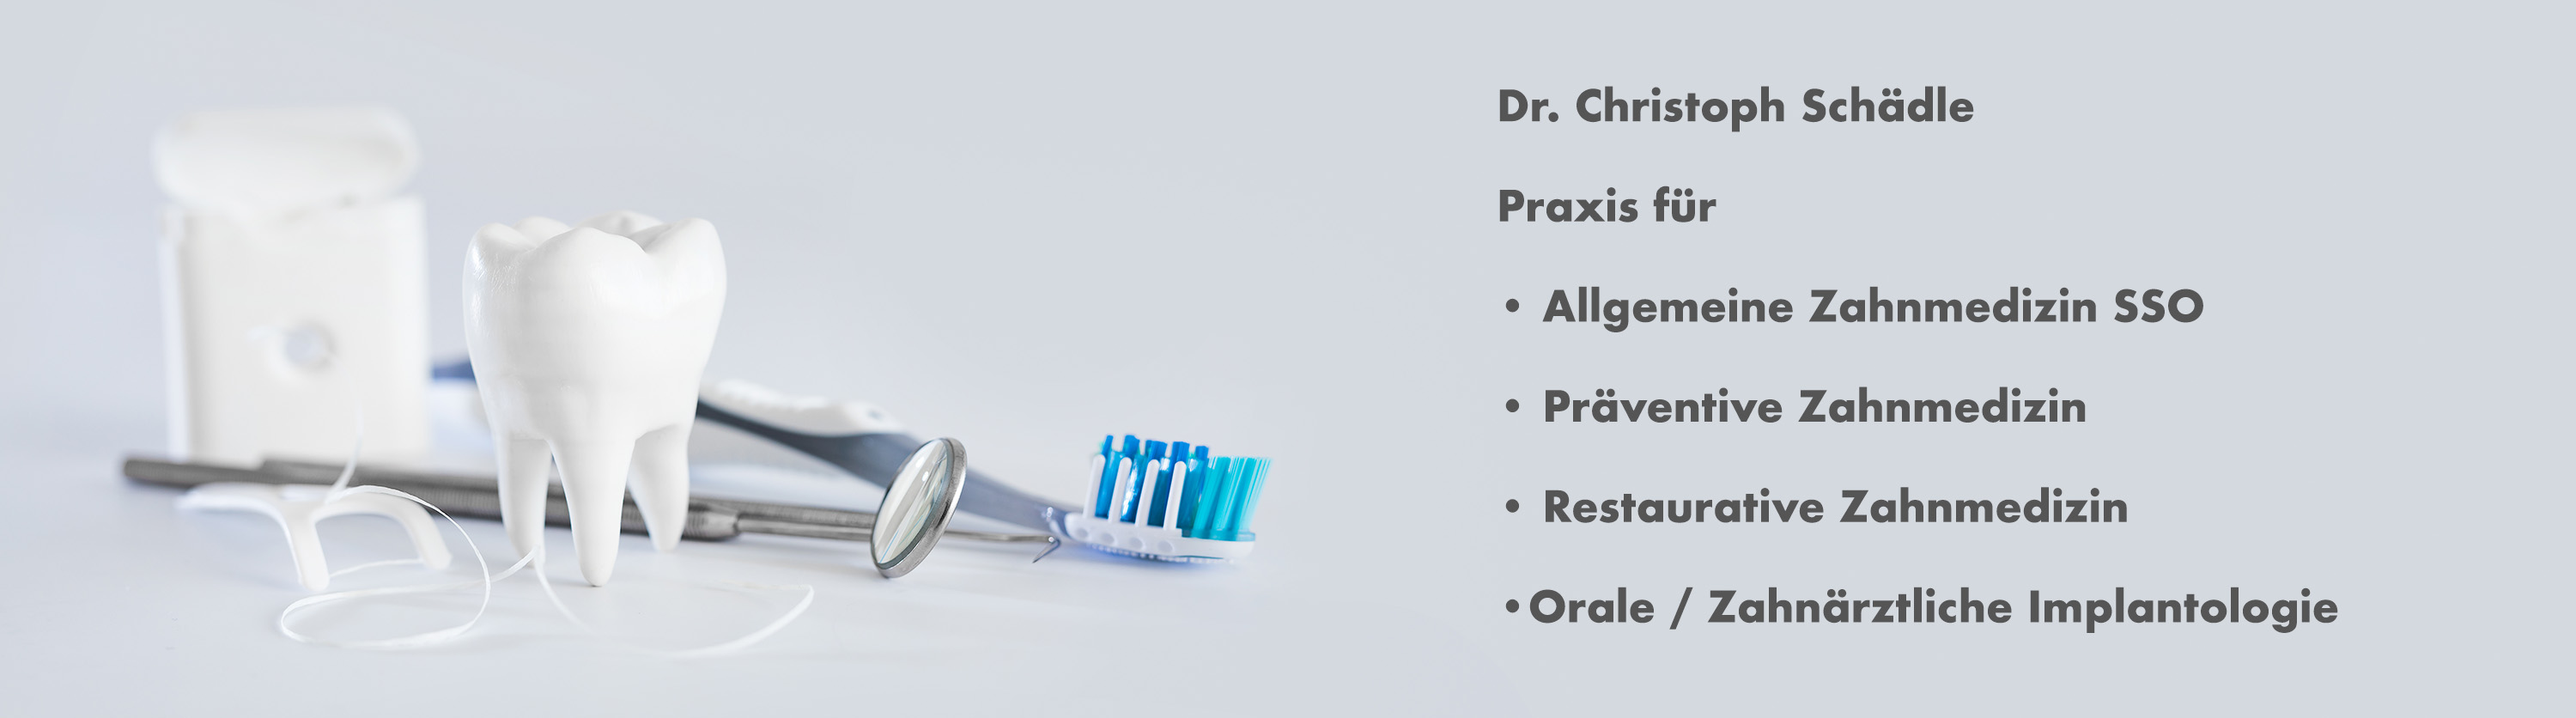 Zahnarztpraxis Dr. Schädle Thalwil Zürich, allgemeine Zahnmedizin SSO, ä Zahnmedizin, restaurative Zahnmedizin, orale / zahnärztliche Implantologie